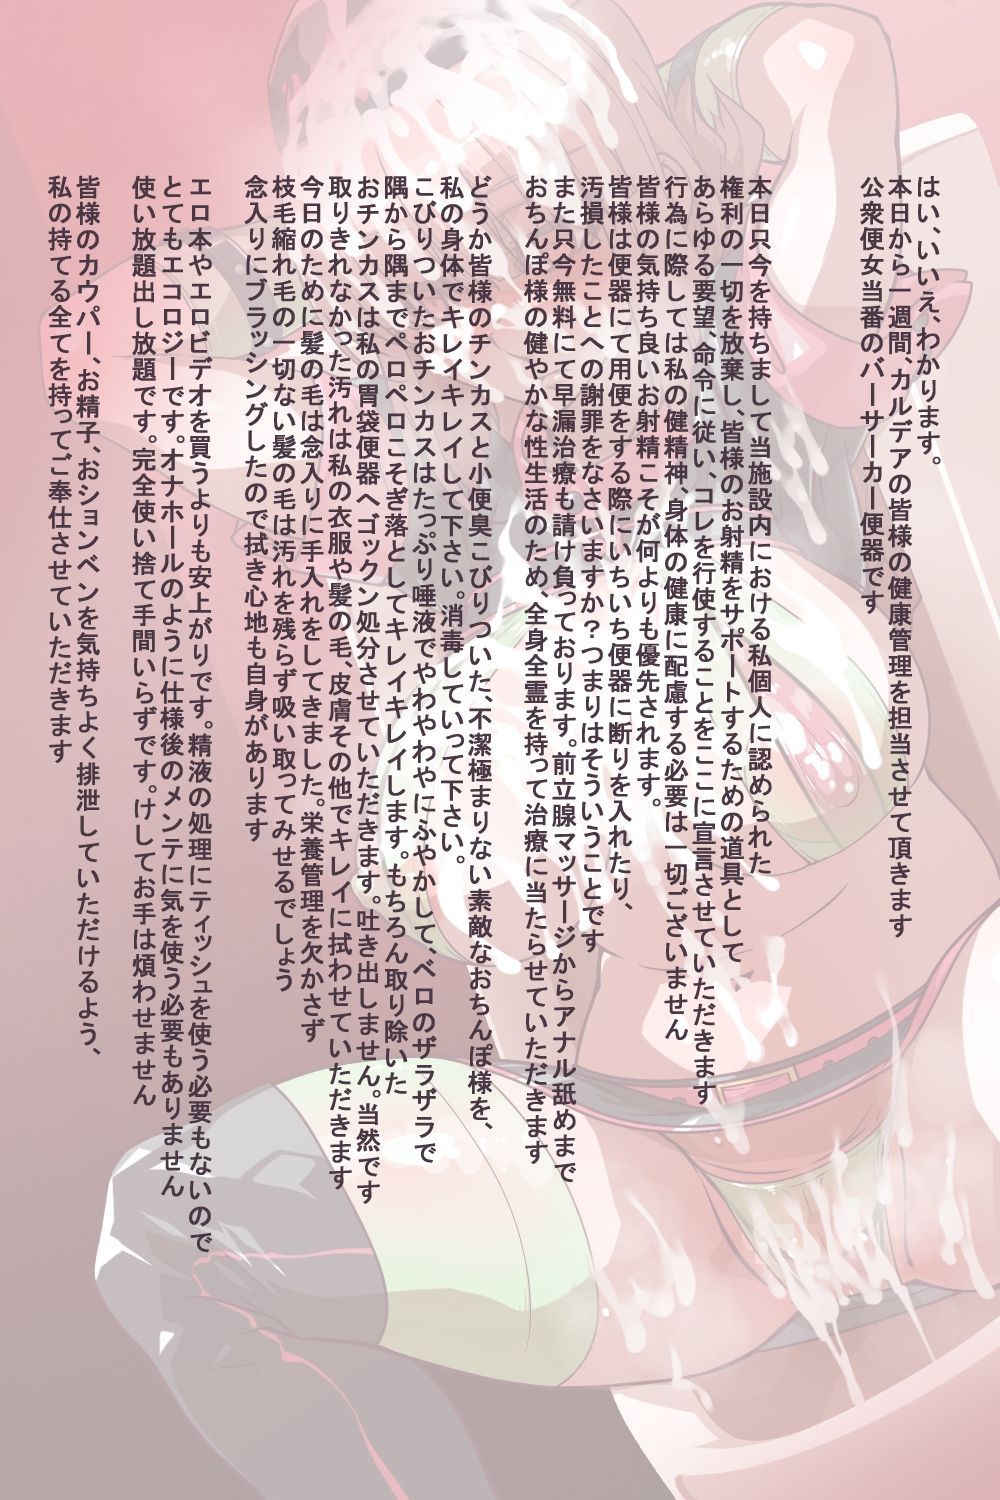 [Ippo Mae e] Berserker no Hito (Fate/Grand Order) [一歩前へ] バーサーカーの人 (Fate/Grand Order) 27